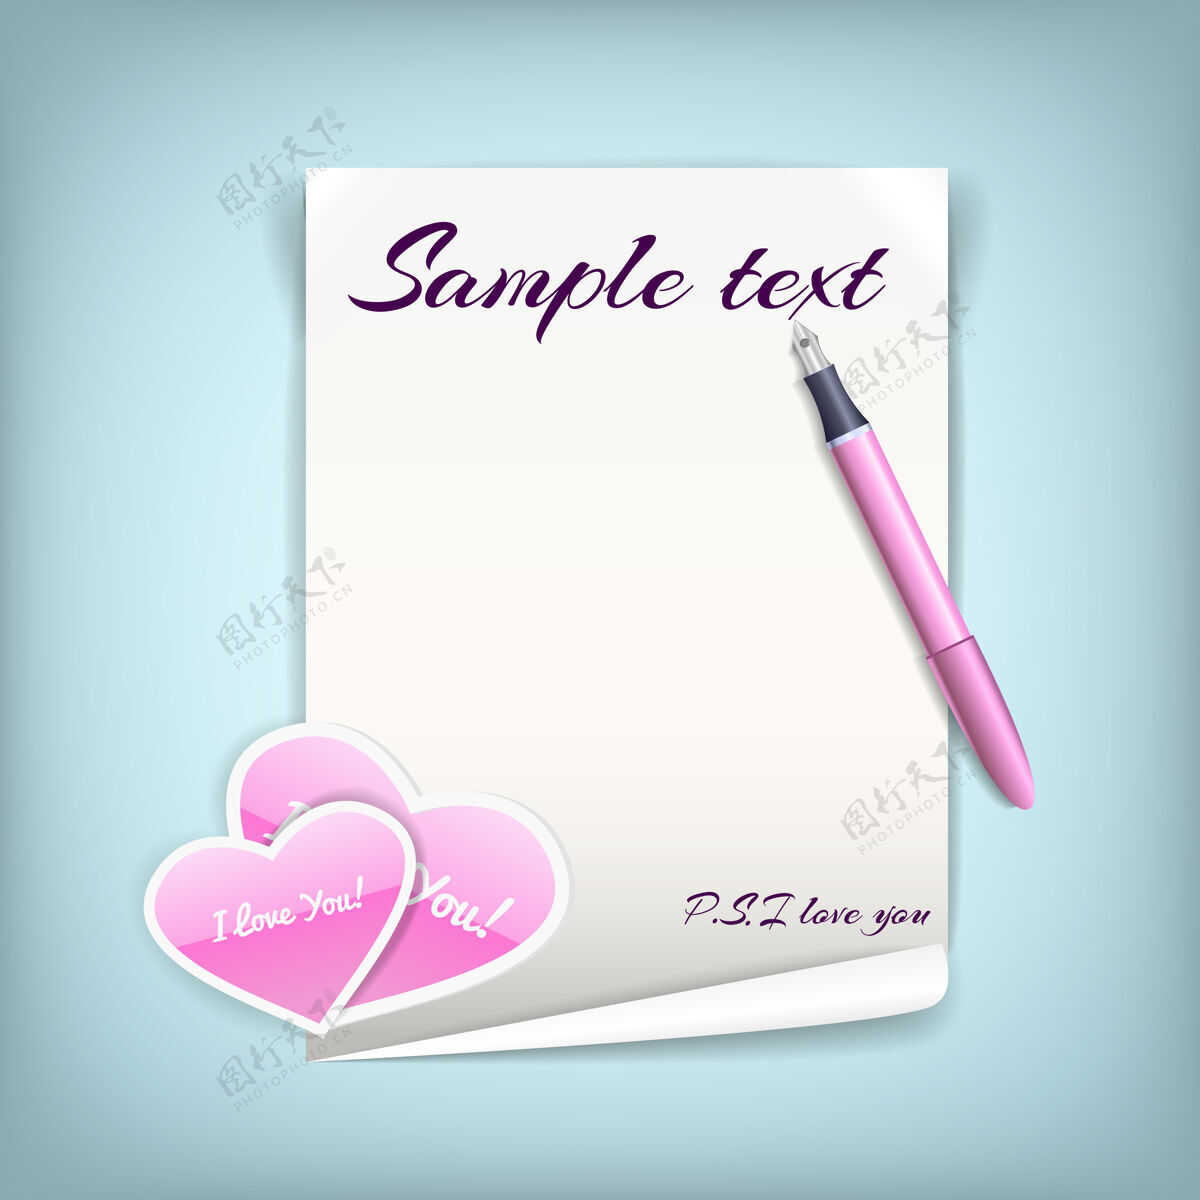 心一张黑白相间的纸 上面印着粉红色的心形 上面写着用钢笔写的情书剪贴簿魅力忏悔